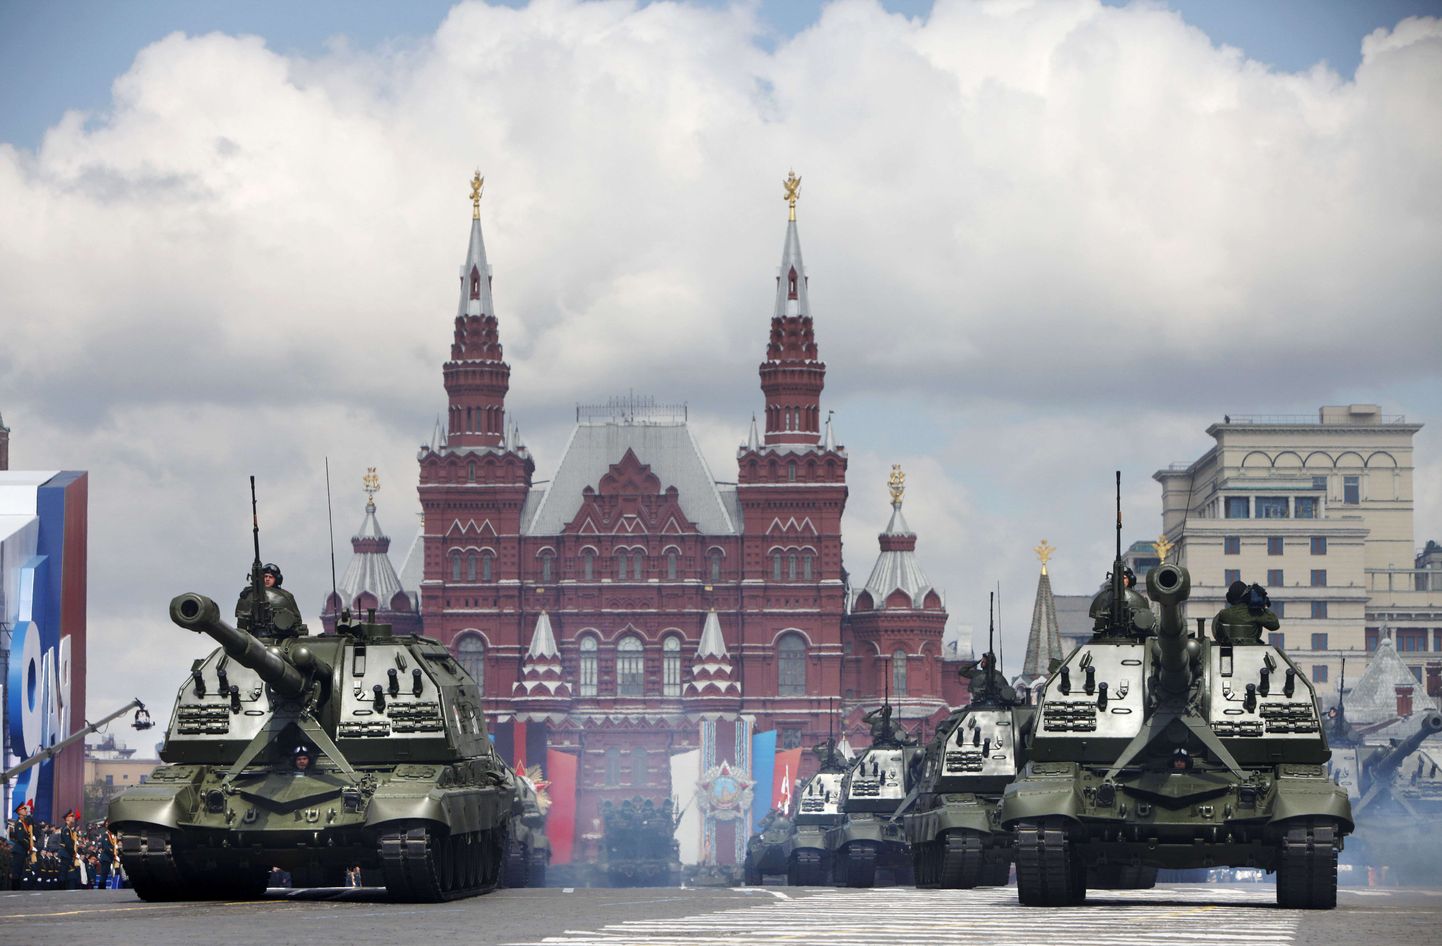 Vene tankid Punasel väljakul 2011. aasta maiparaadi ajal.